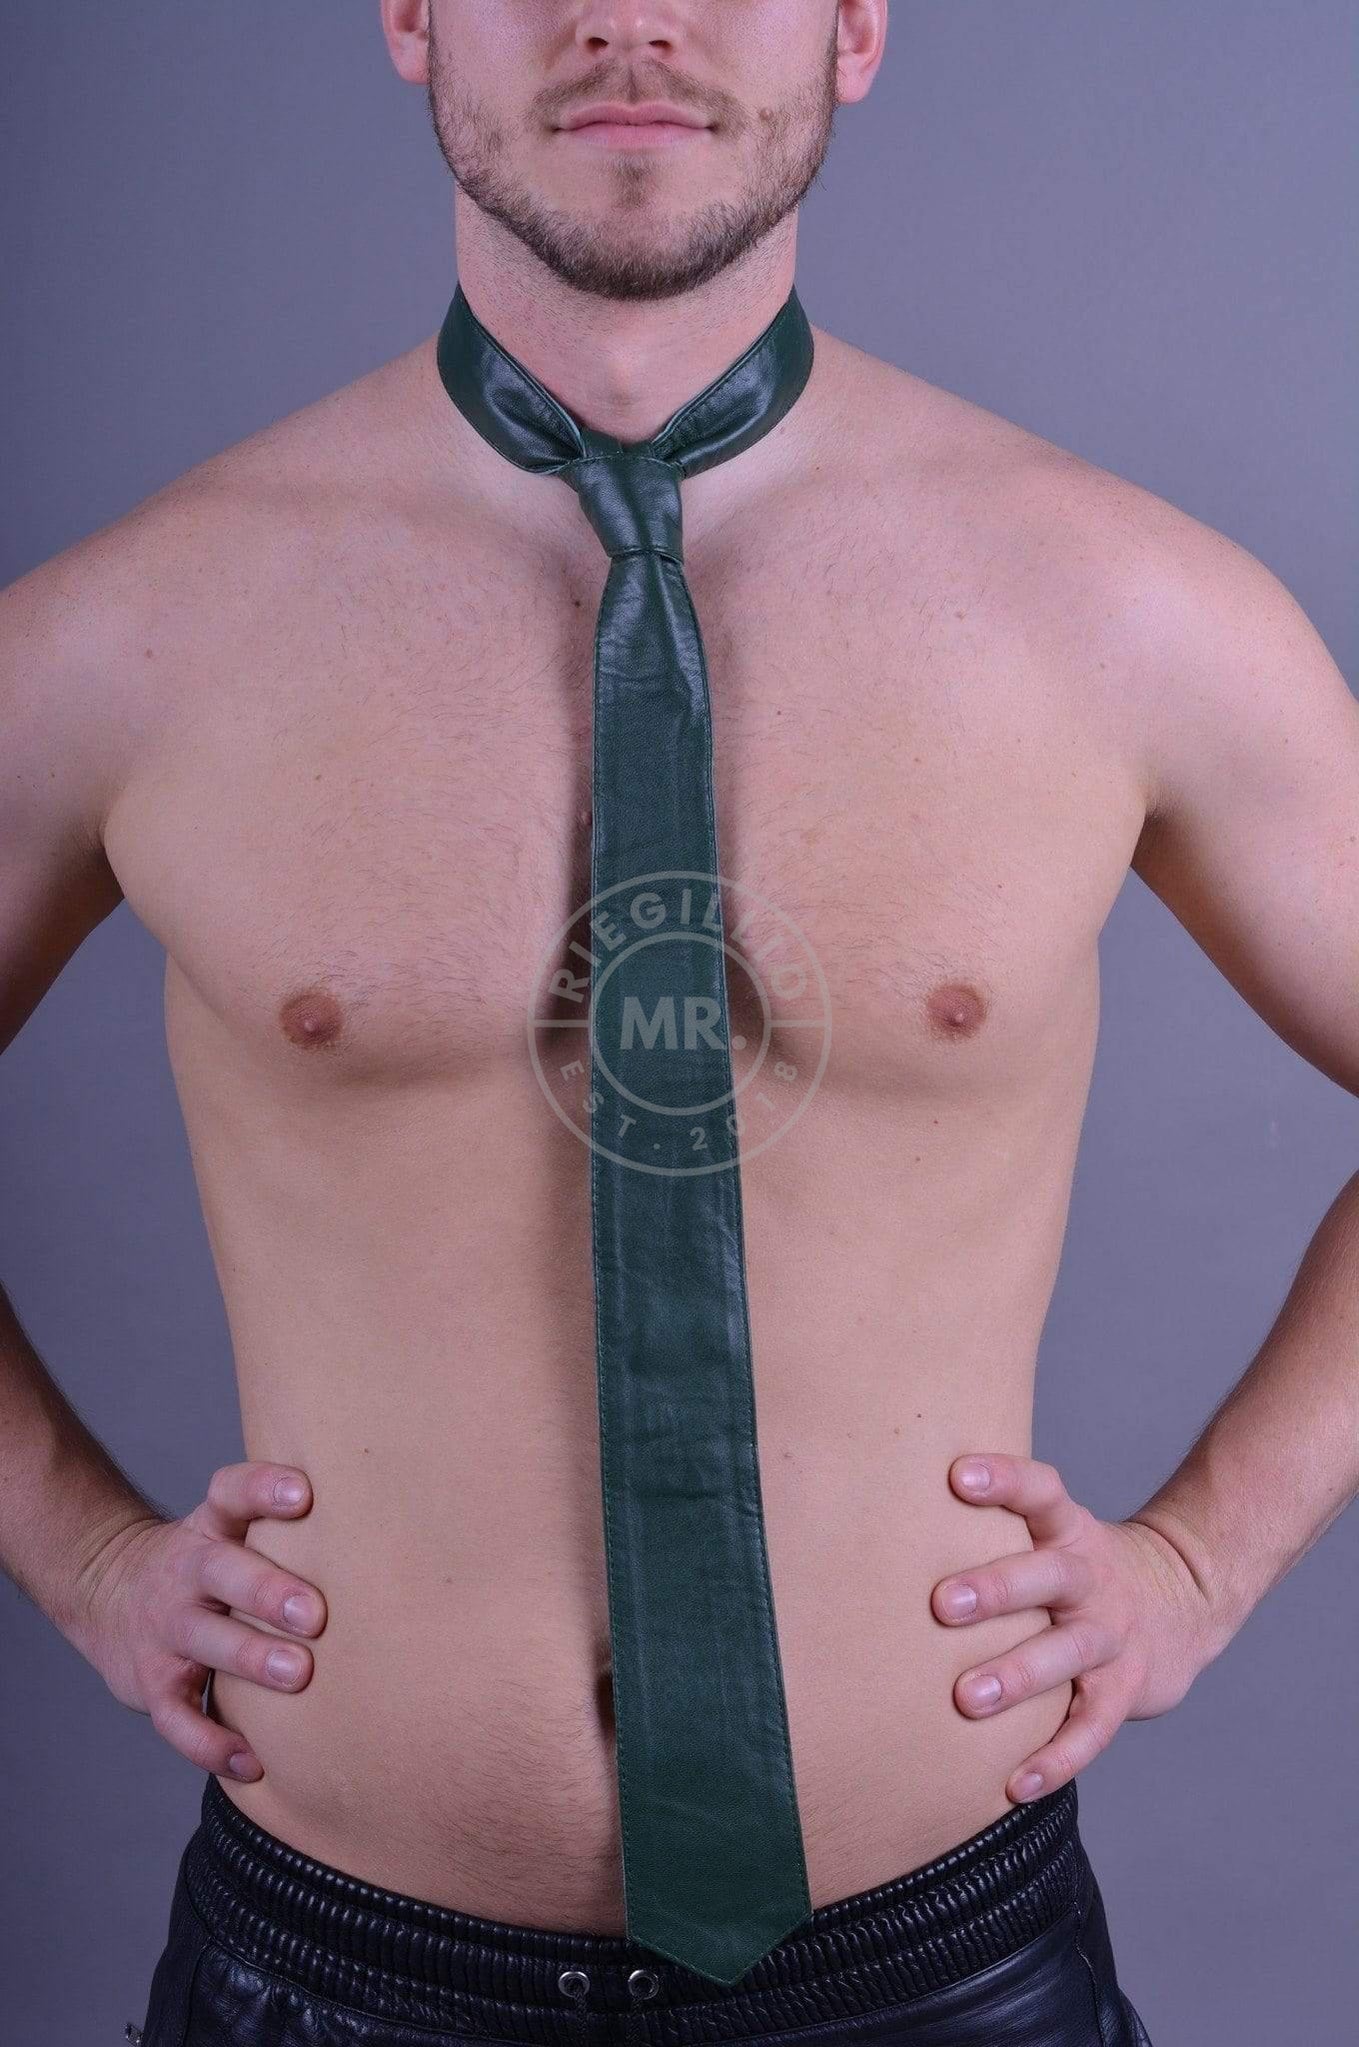 Dark Green Leather Tie at MR. Riegillio